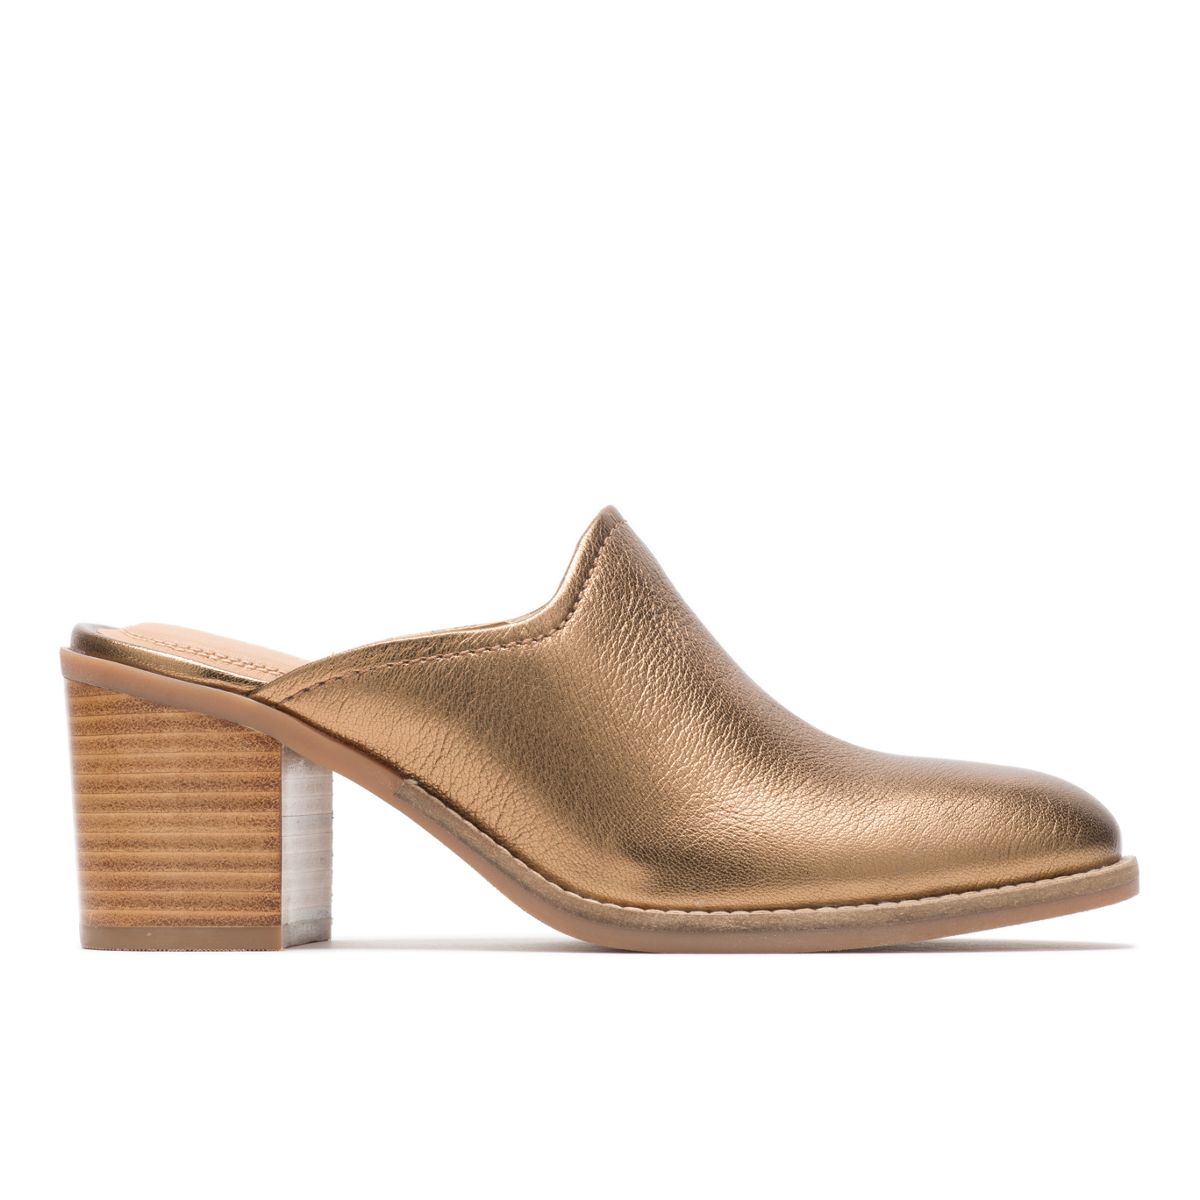 mule heels for women